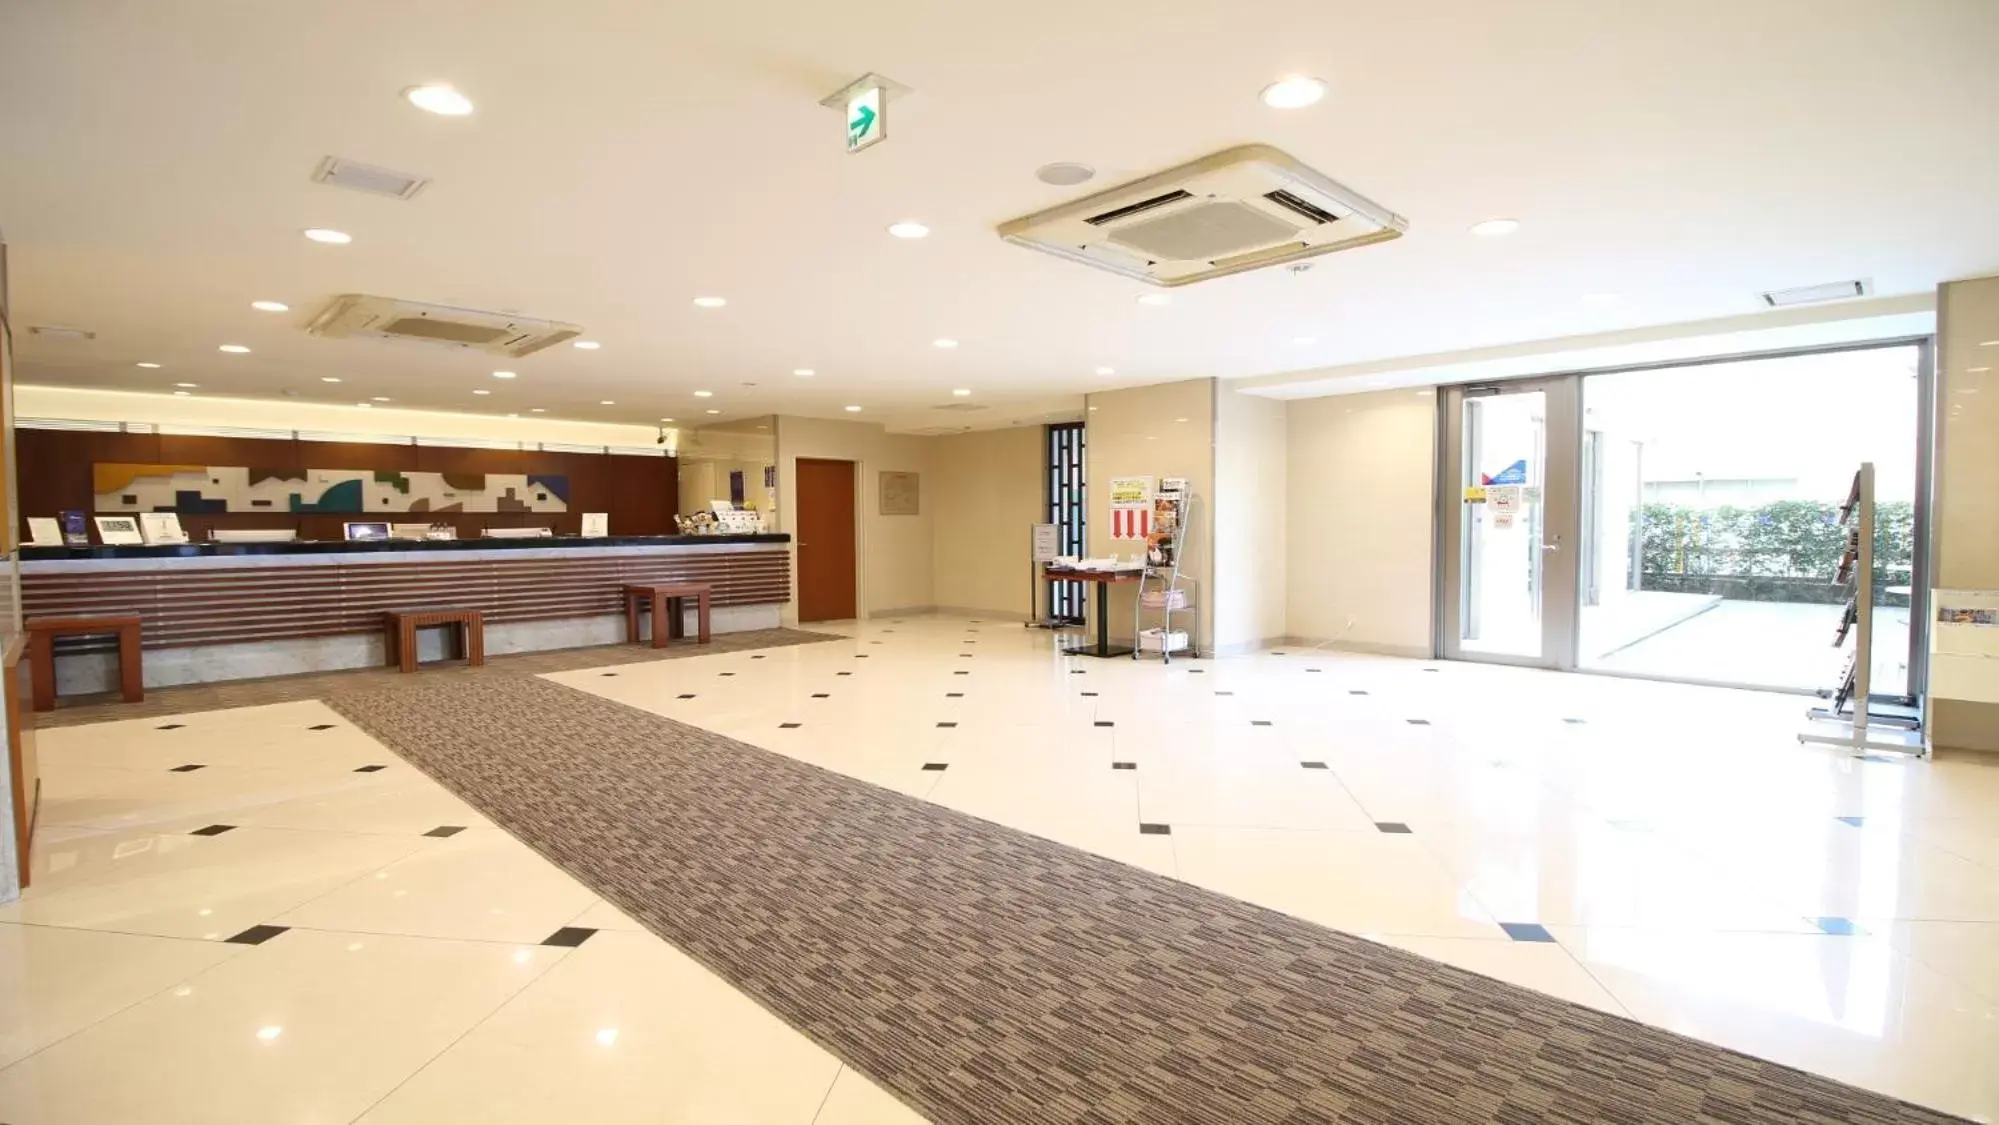 Lobby or reception, Lobby/Reception in Meitetsu Inn Nagoya Kanayama